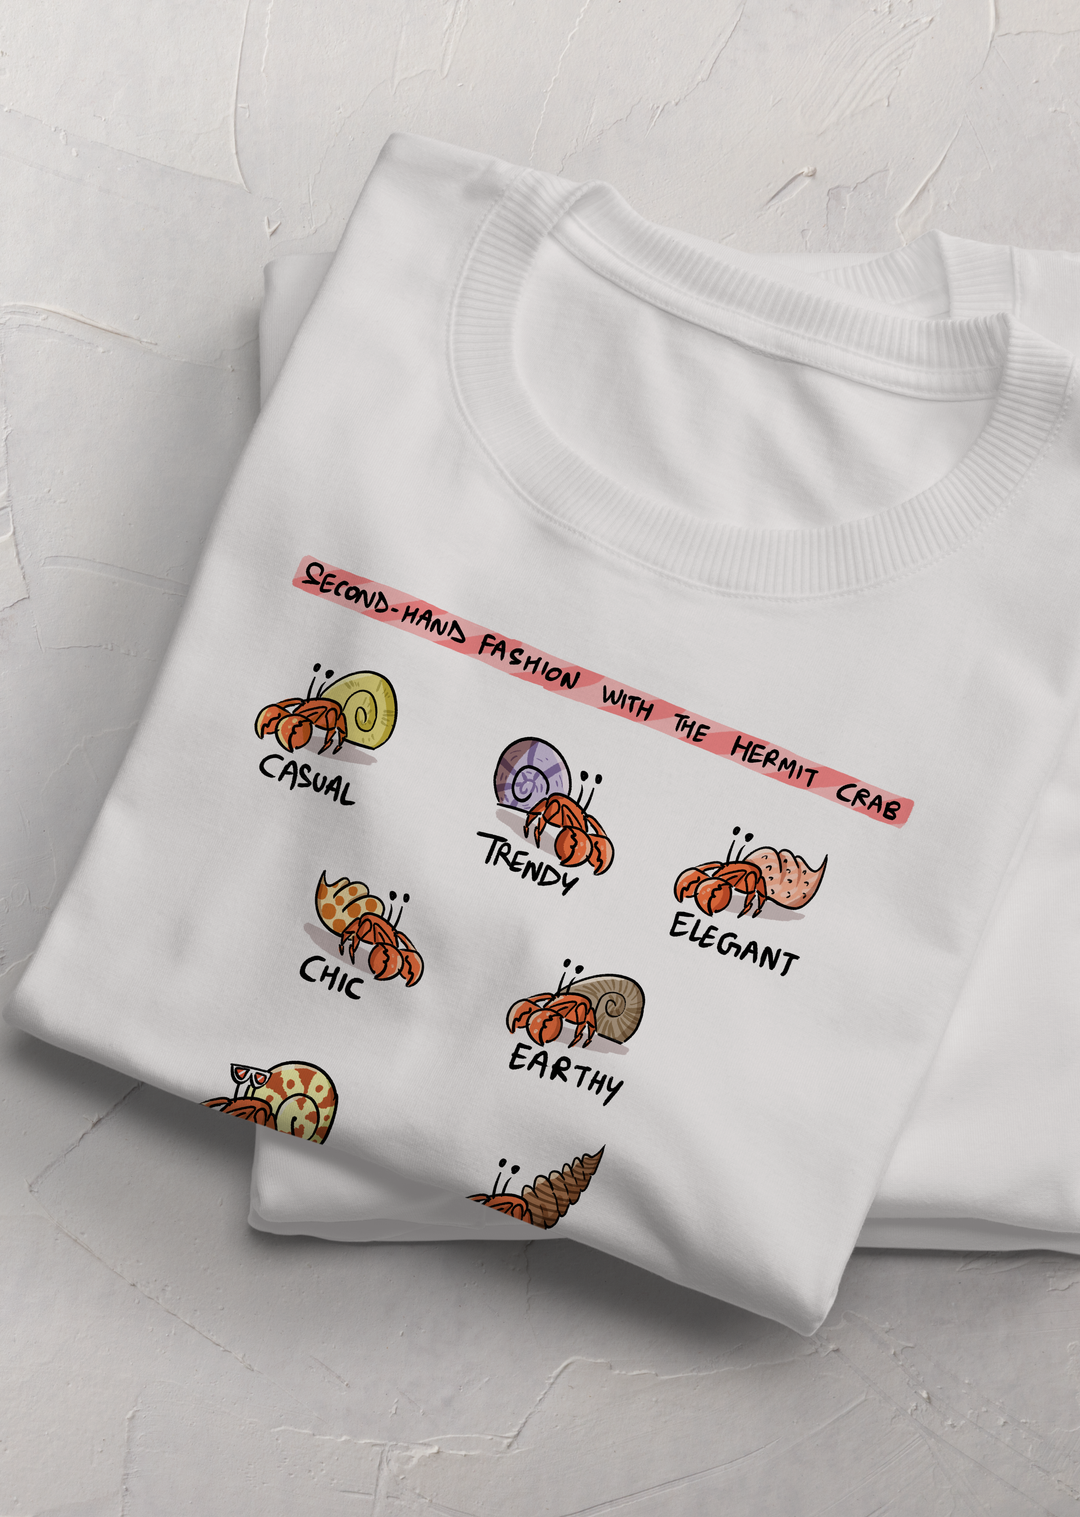 Hermit Crab Fashion T-Shirt